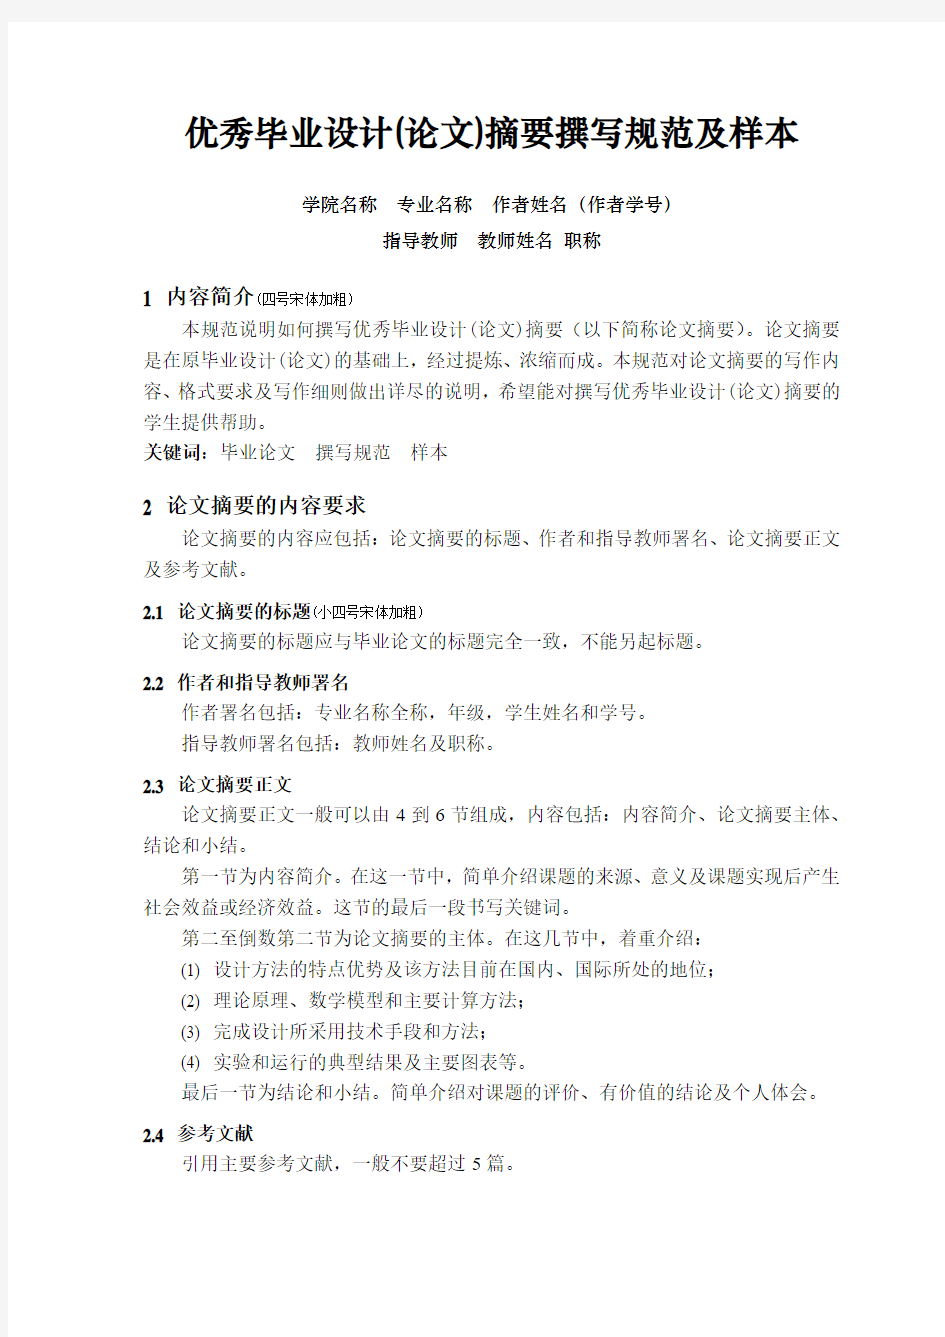 上海理工大学本科优秀毕业设计(论文)摘要撰写规范及样本docx